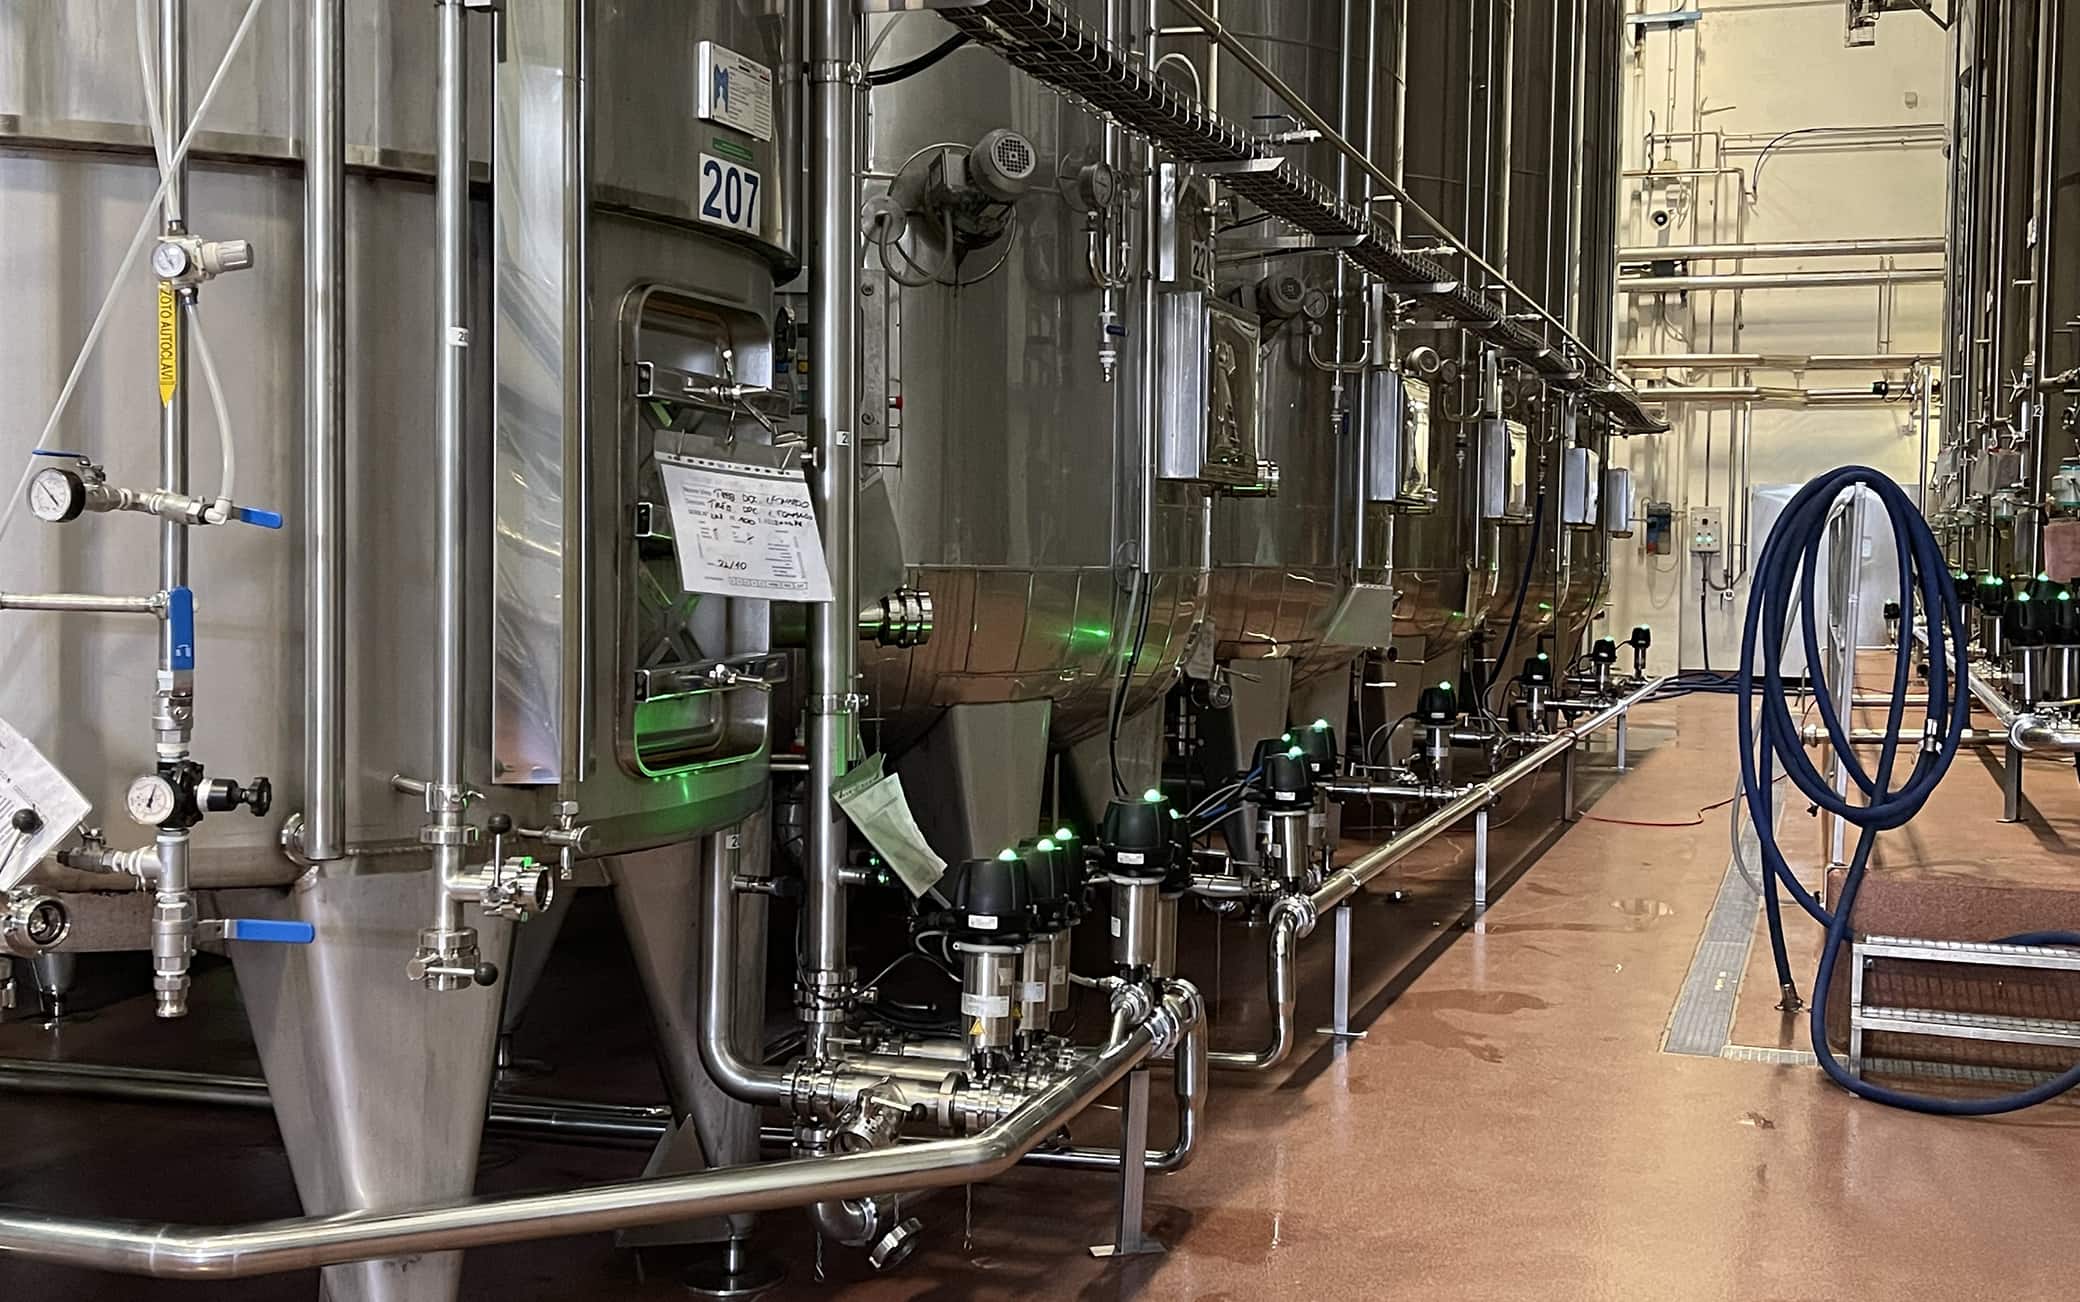 Lo stabilimento vitivinicolo Caviro di Forlì è uno dei più tecnologizzati al mondo